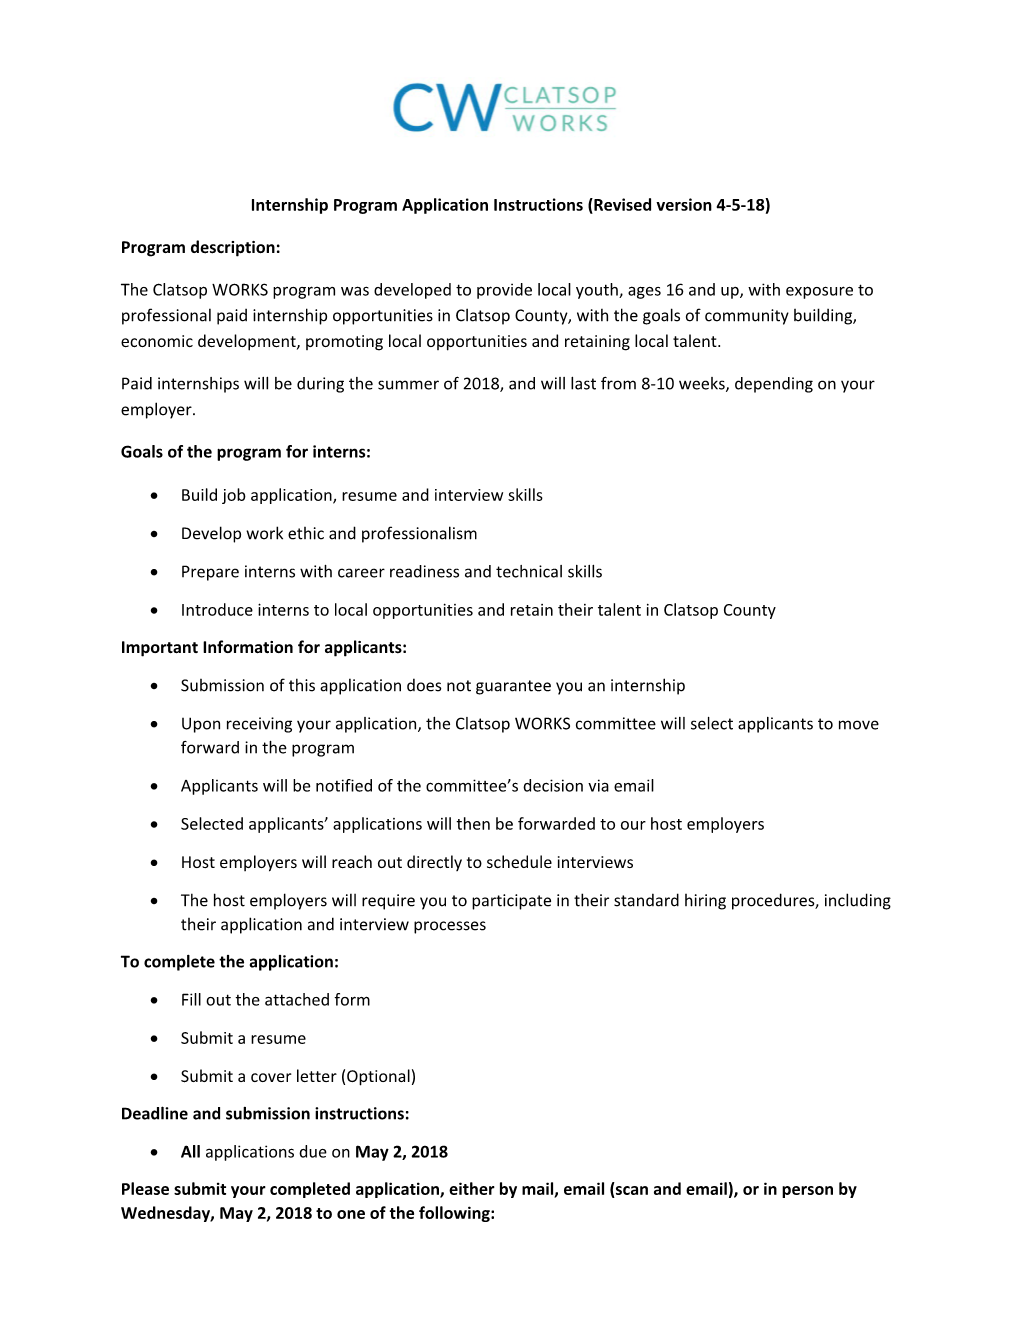 Internship Program Application Instructions (Revised Version 4-5-18)